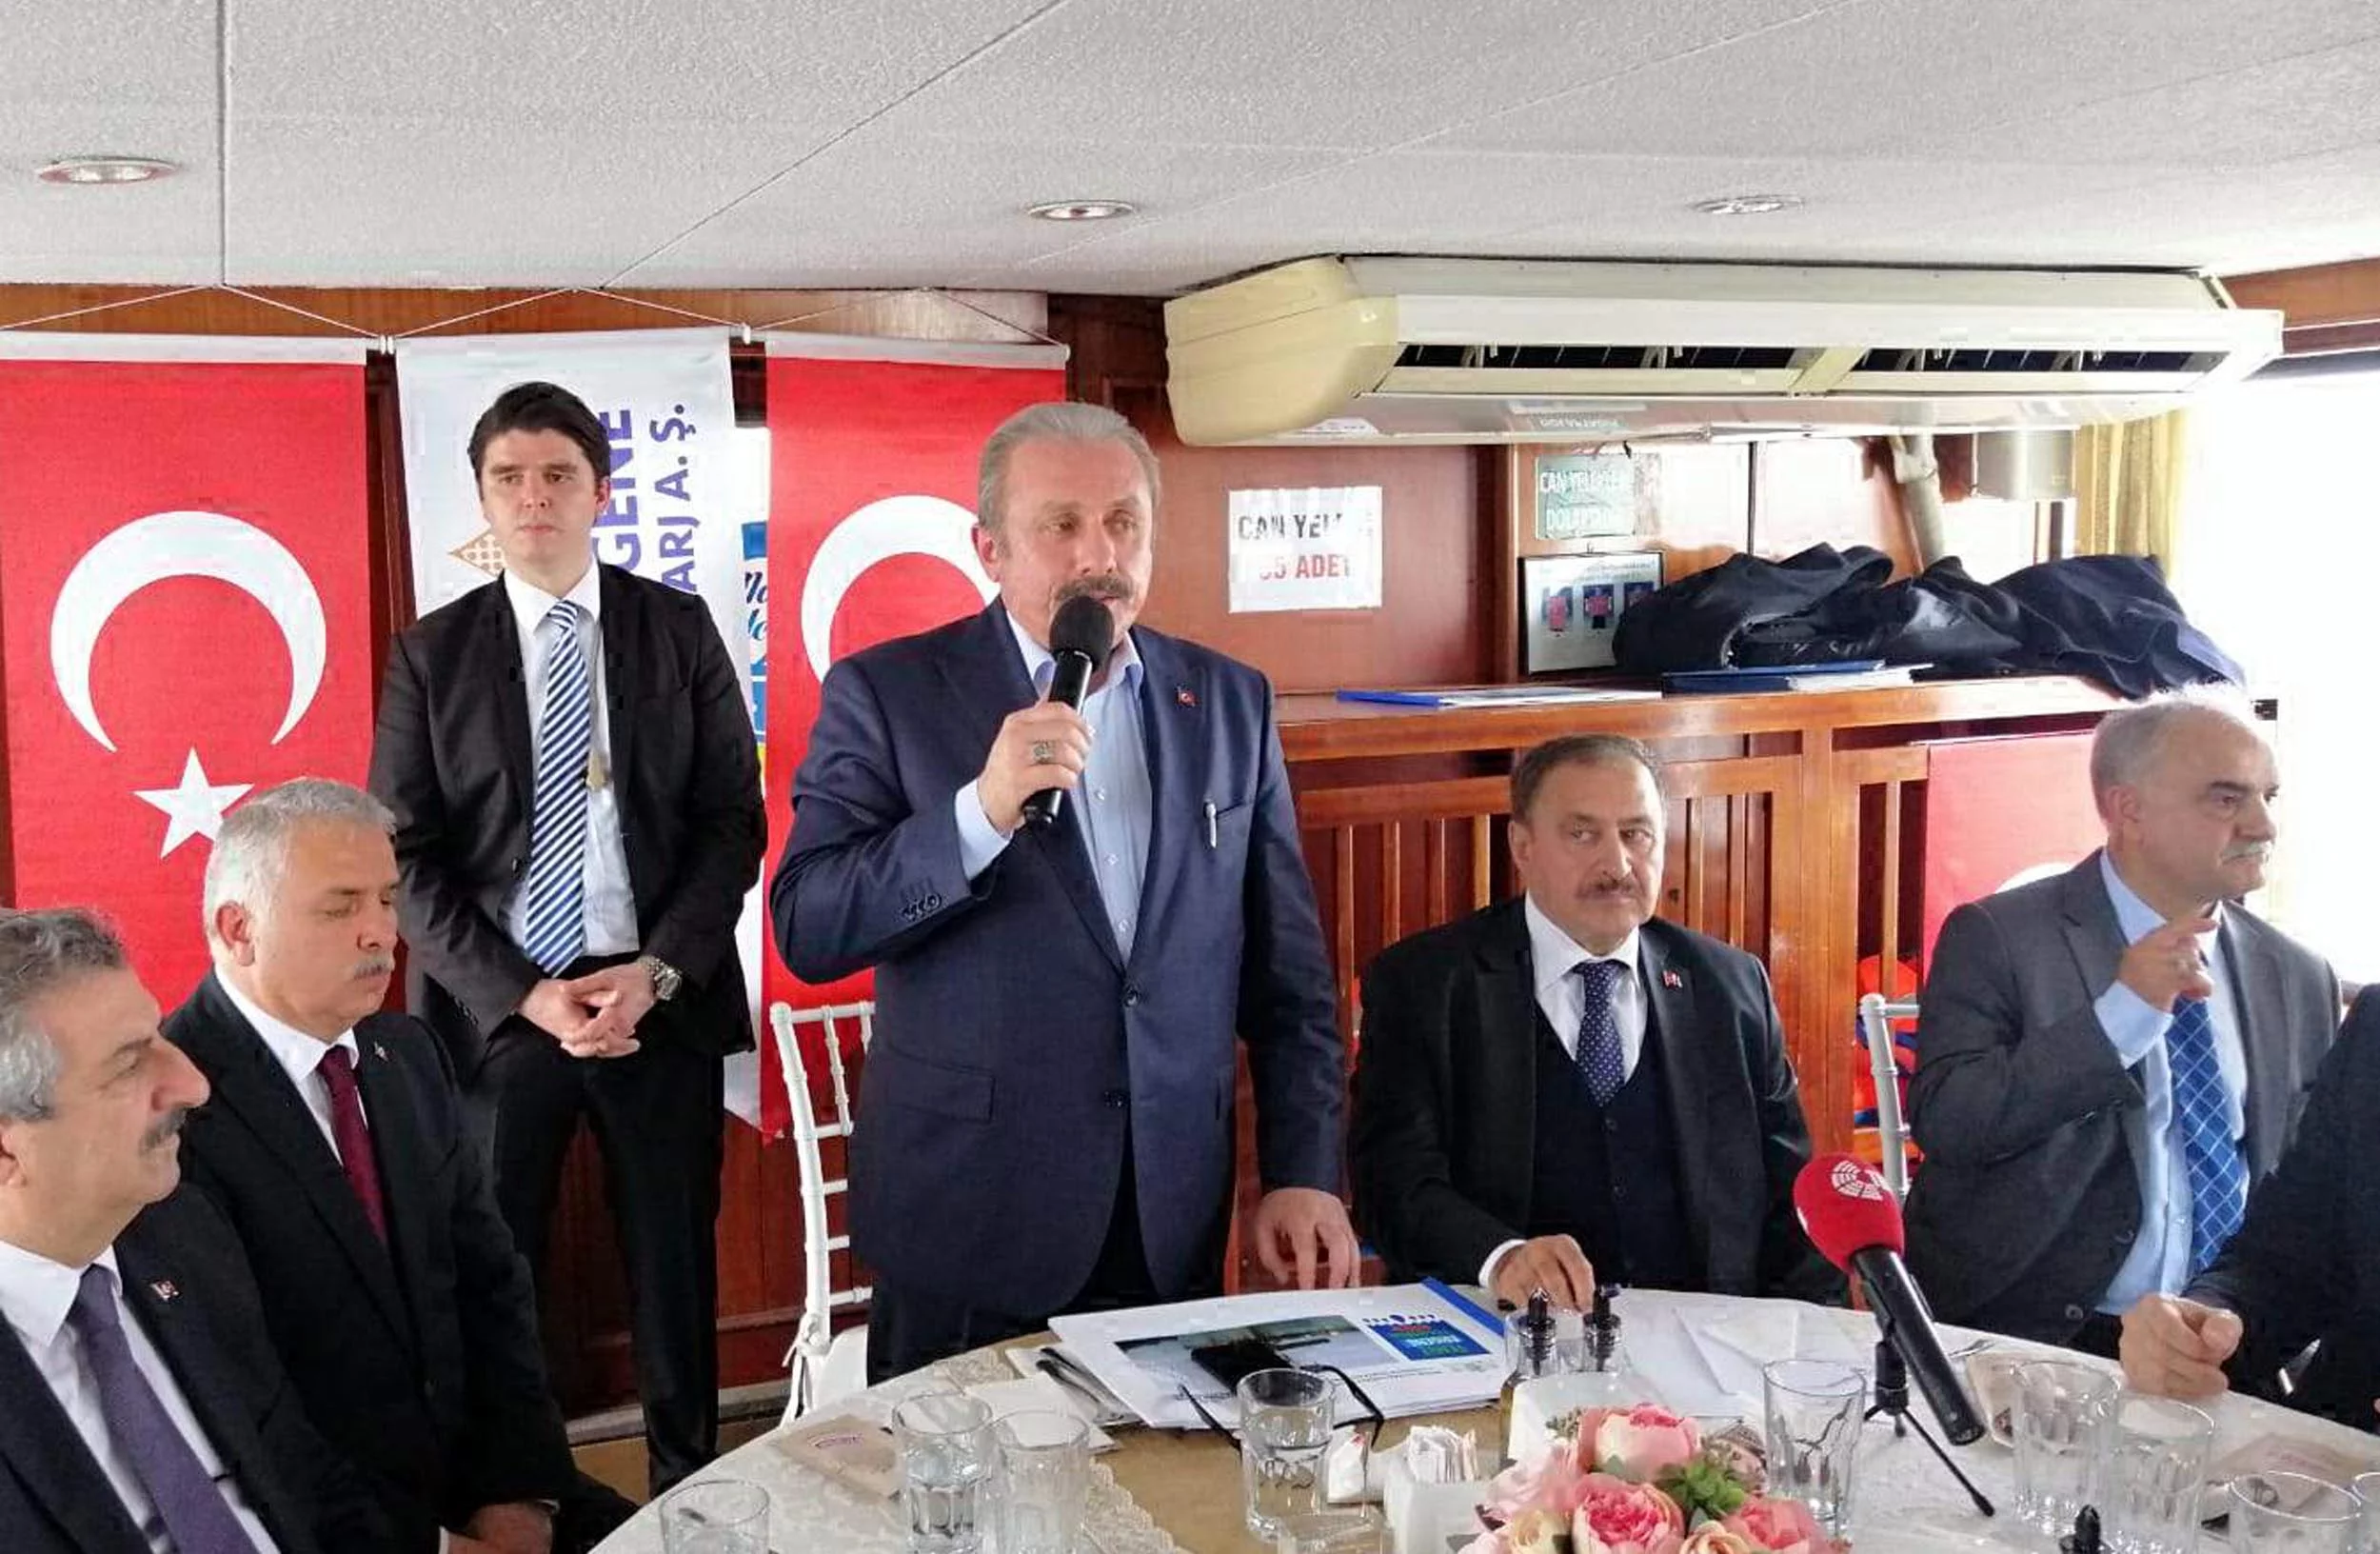 TBMM Başkanı Şentop, Kılıçdaroğlu'na saldırıyı kınadı: Provokasyon olduğu kanaatindeyim